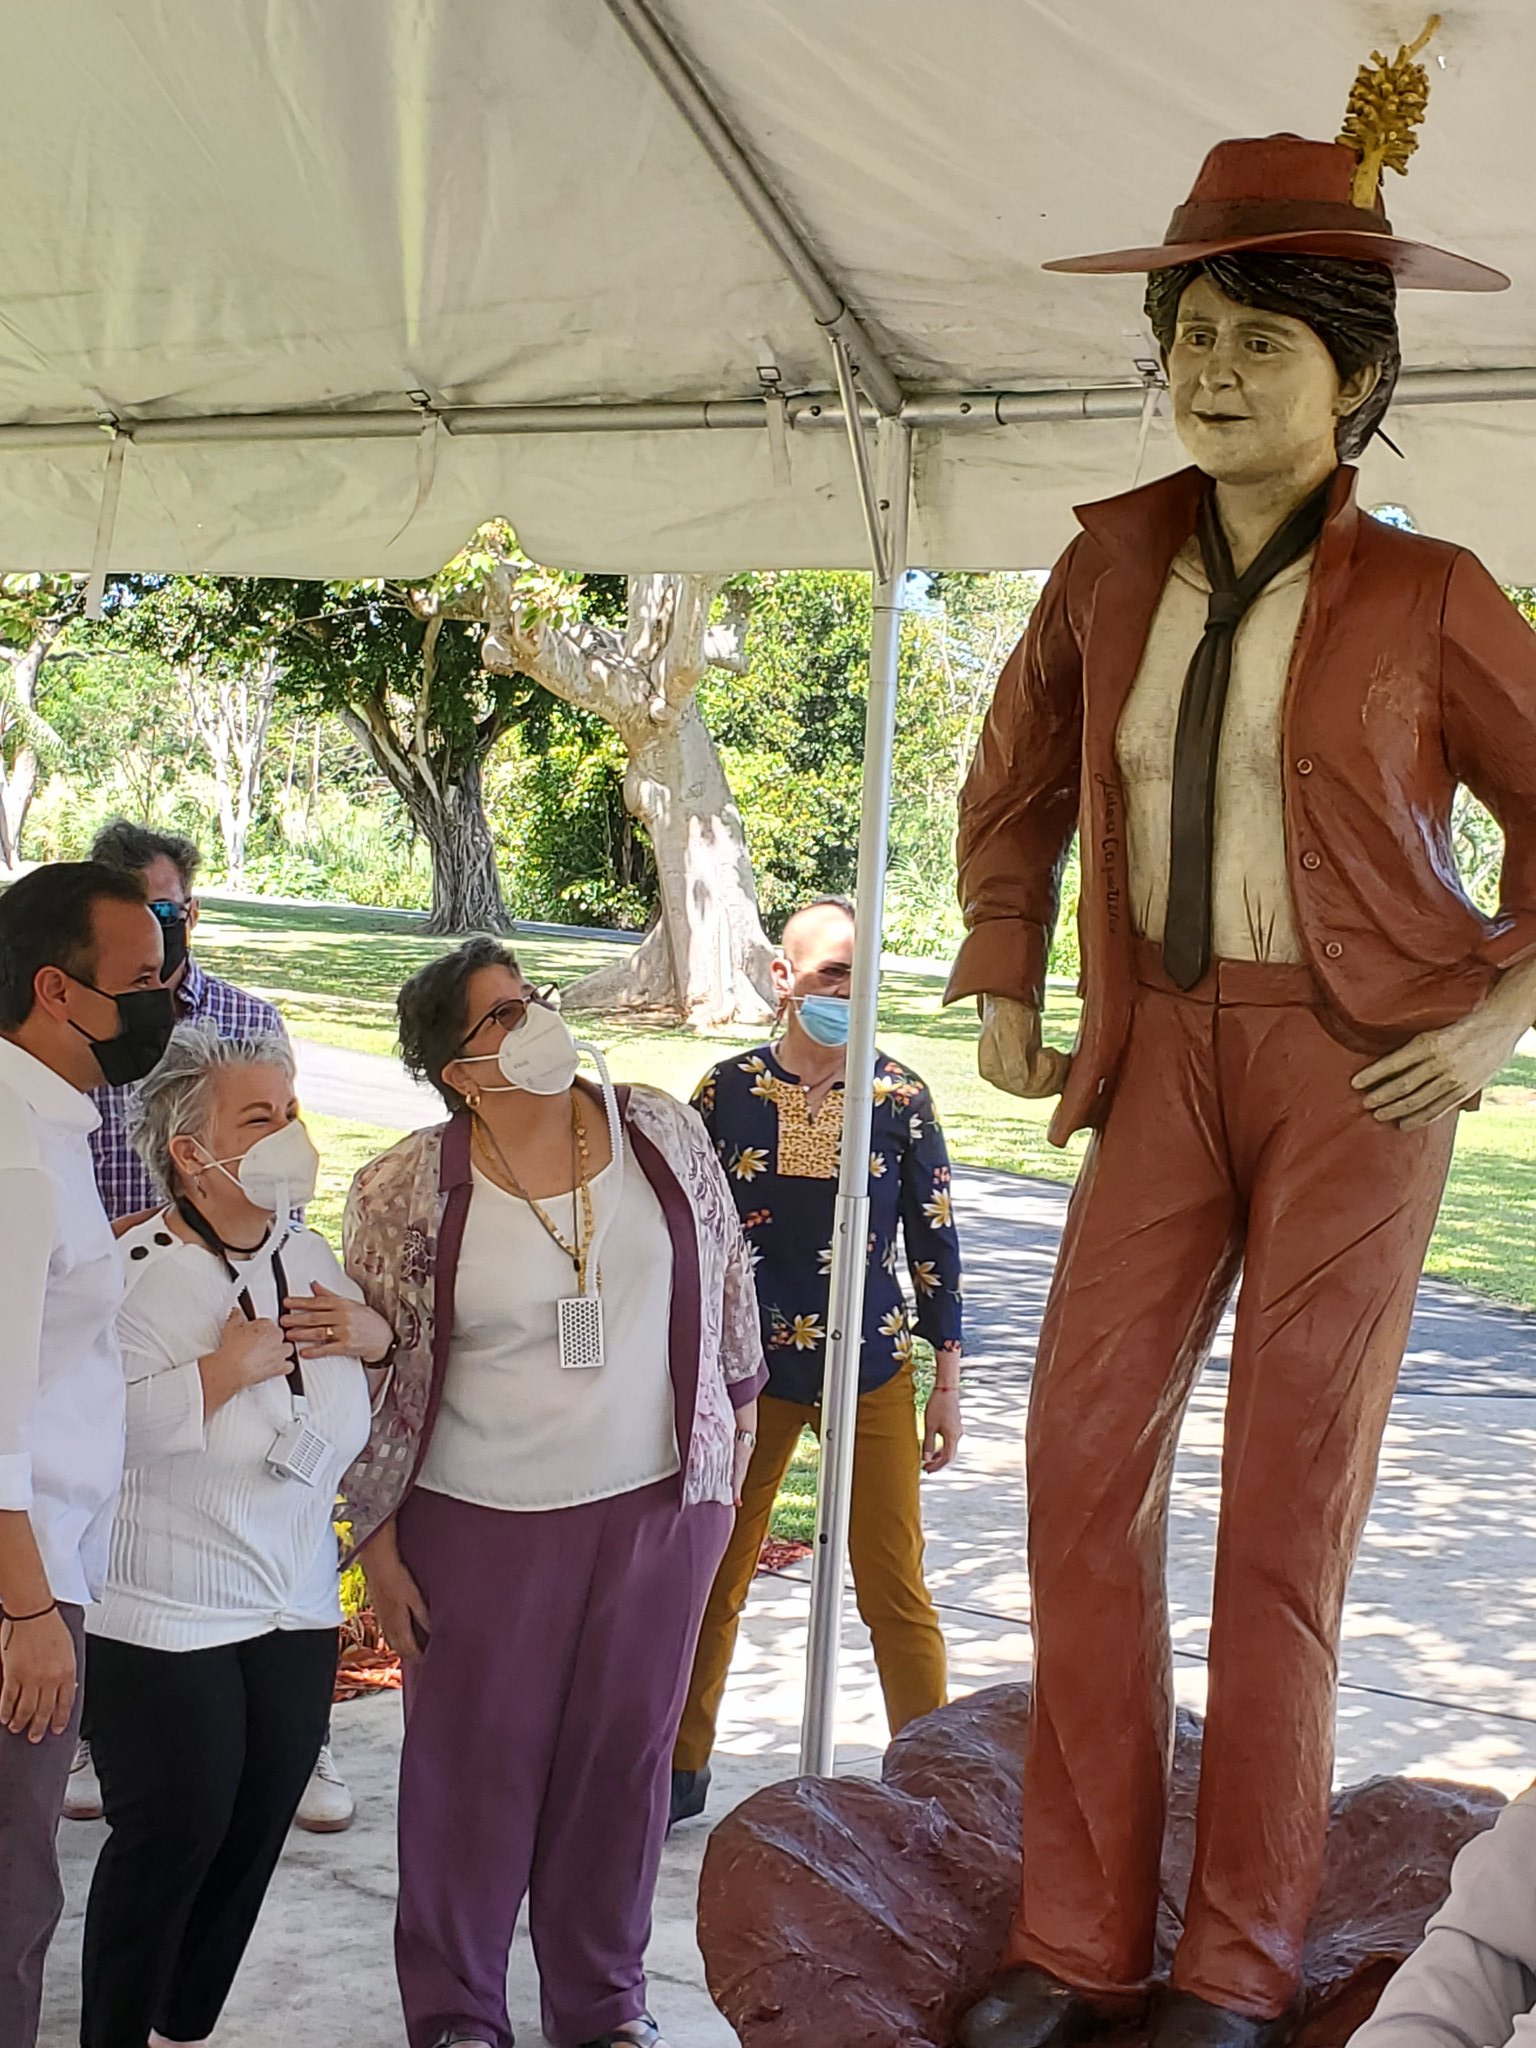 La escultura de Luisa Capetillo realizada por la artista Luz Badillo se ubica en el Parque Muñoz Marín.